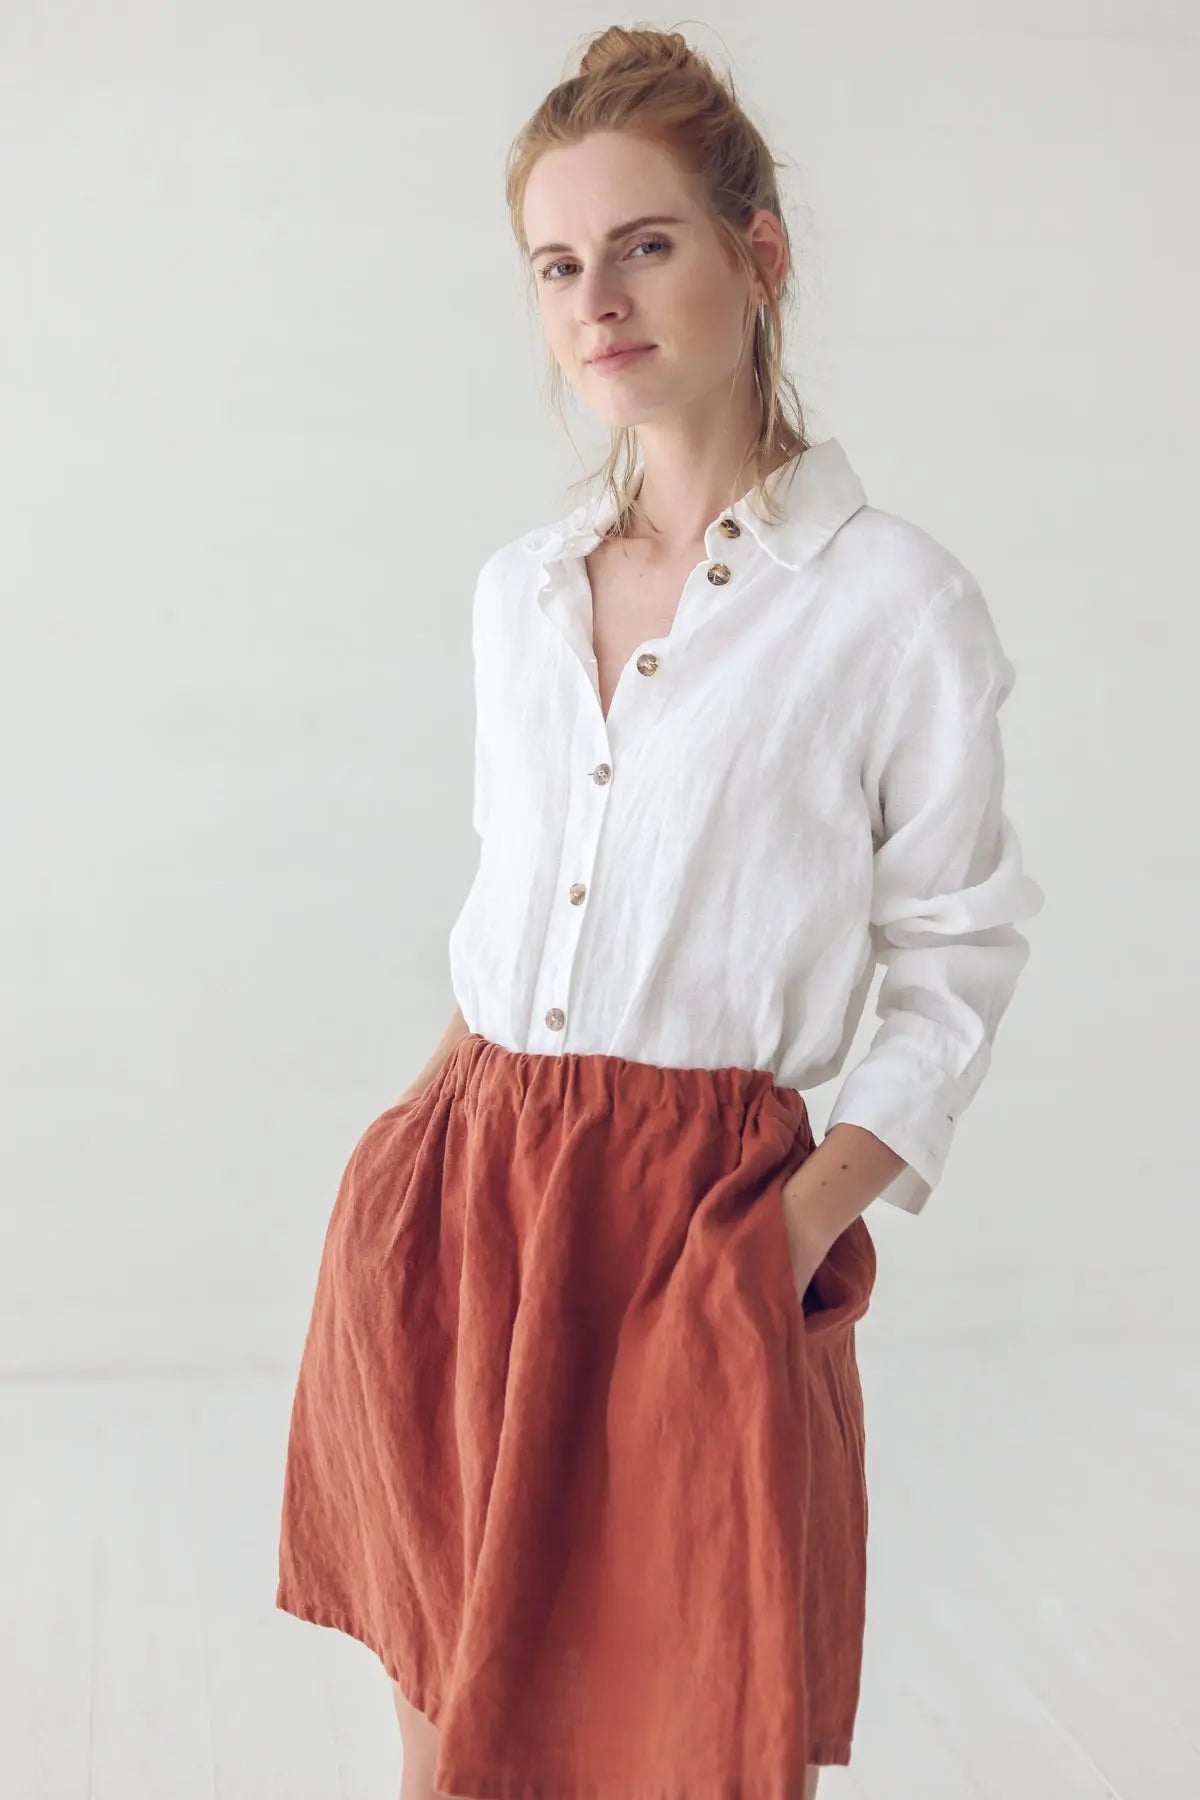 Casual Linen Skirt - Epic Linen luxury linen